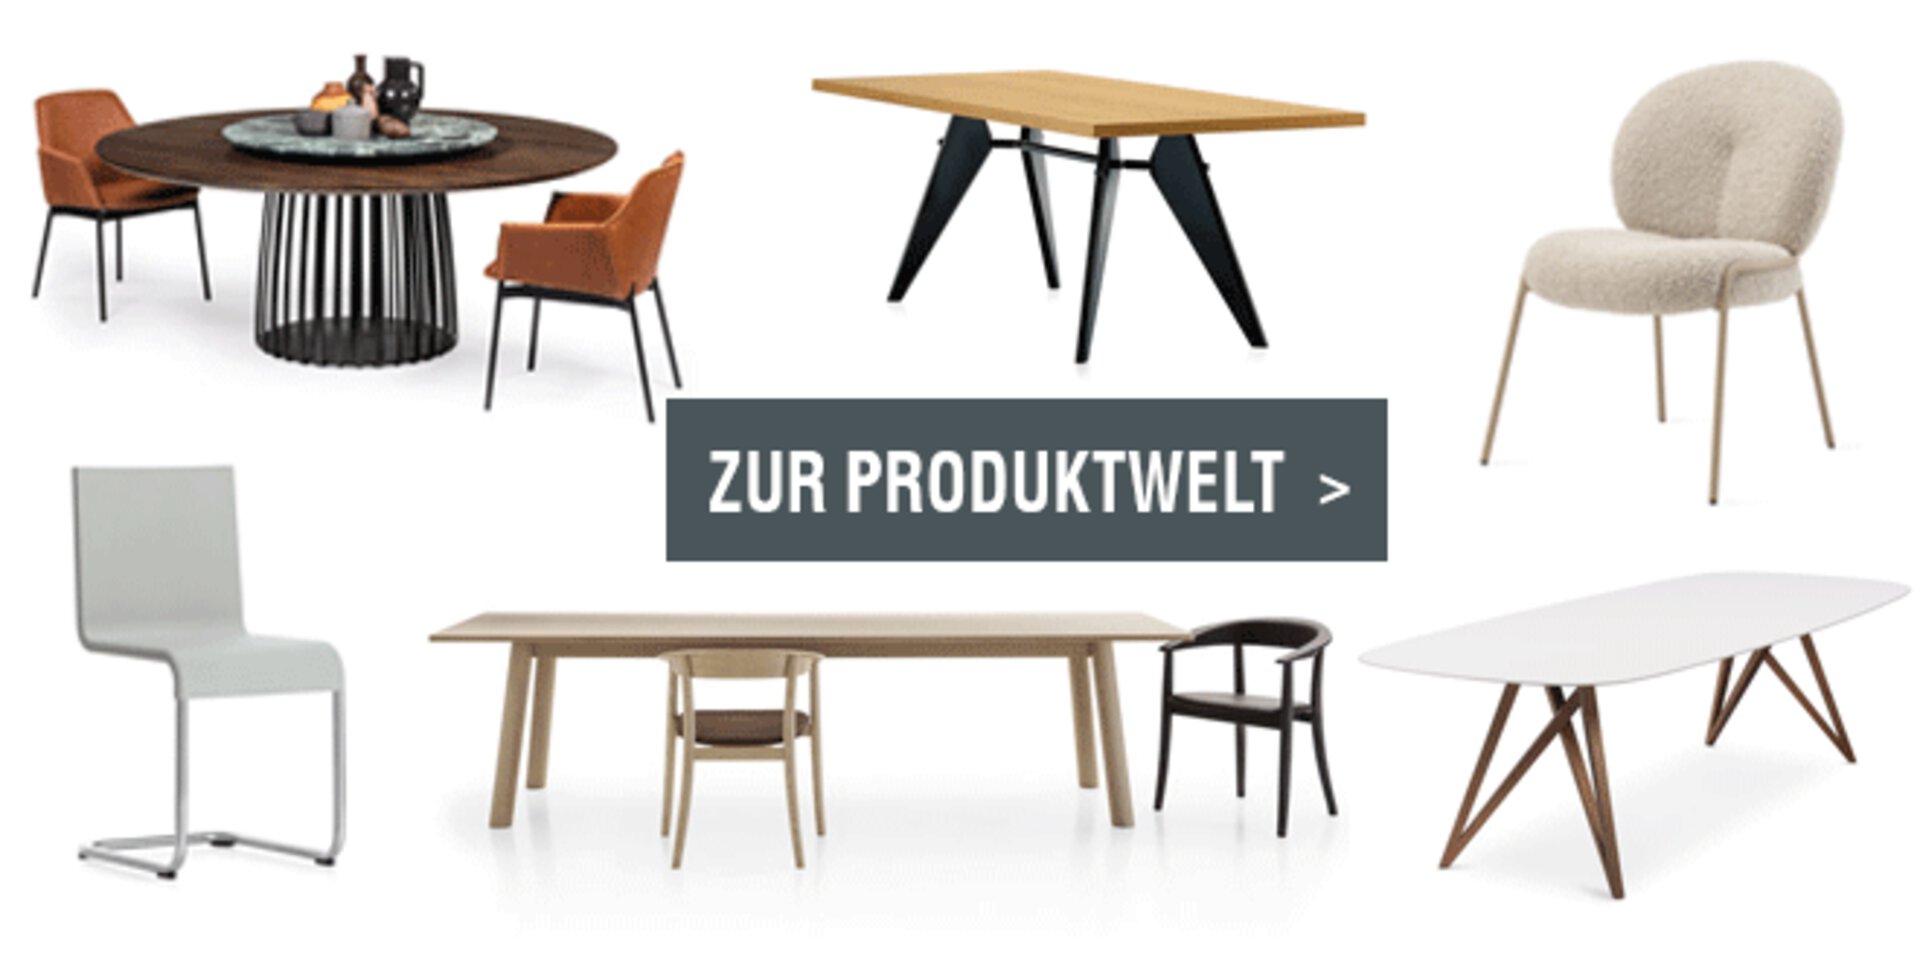 Linkbild zur Tisch- und Stuhl-Produktwelt von interni